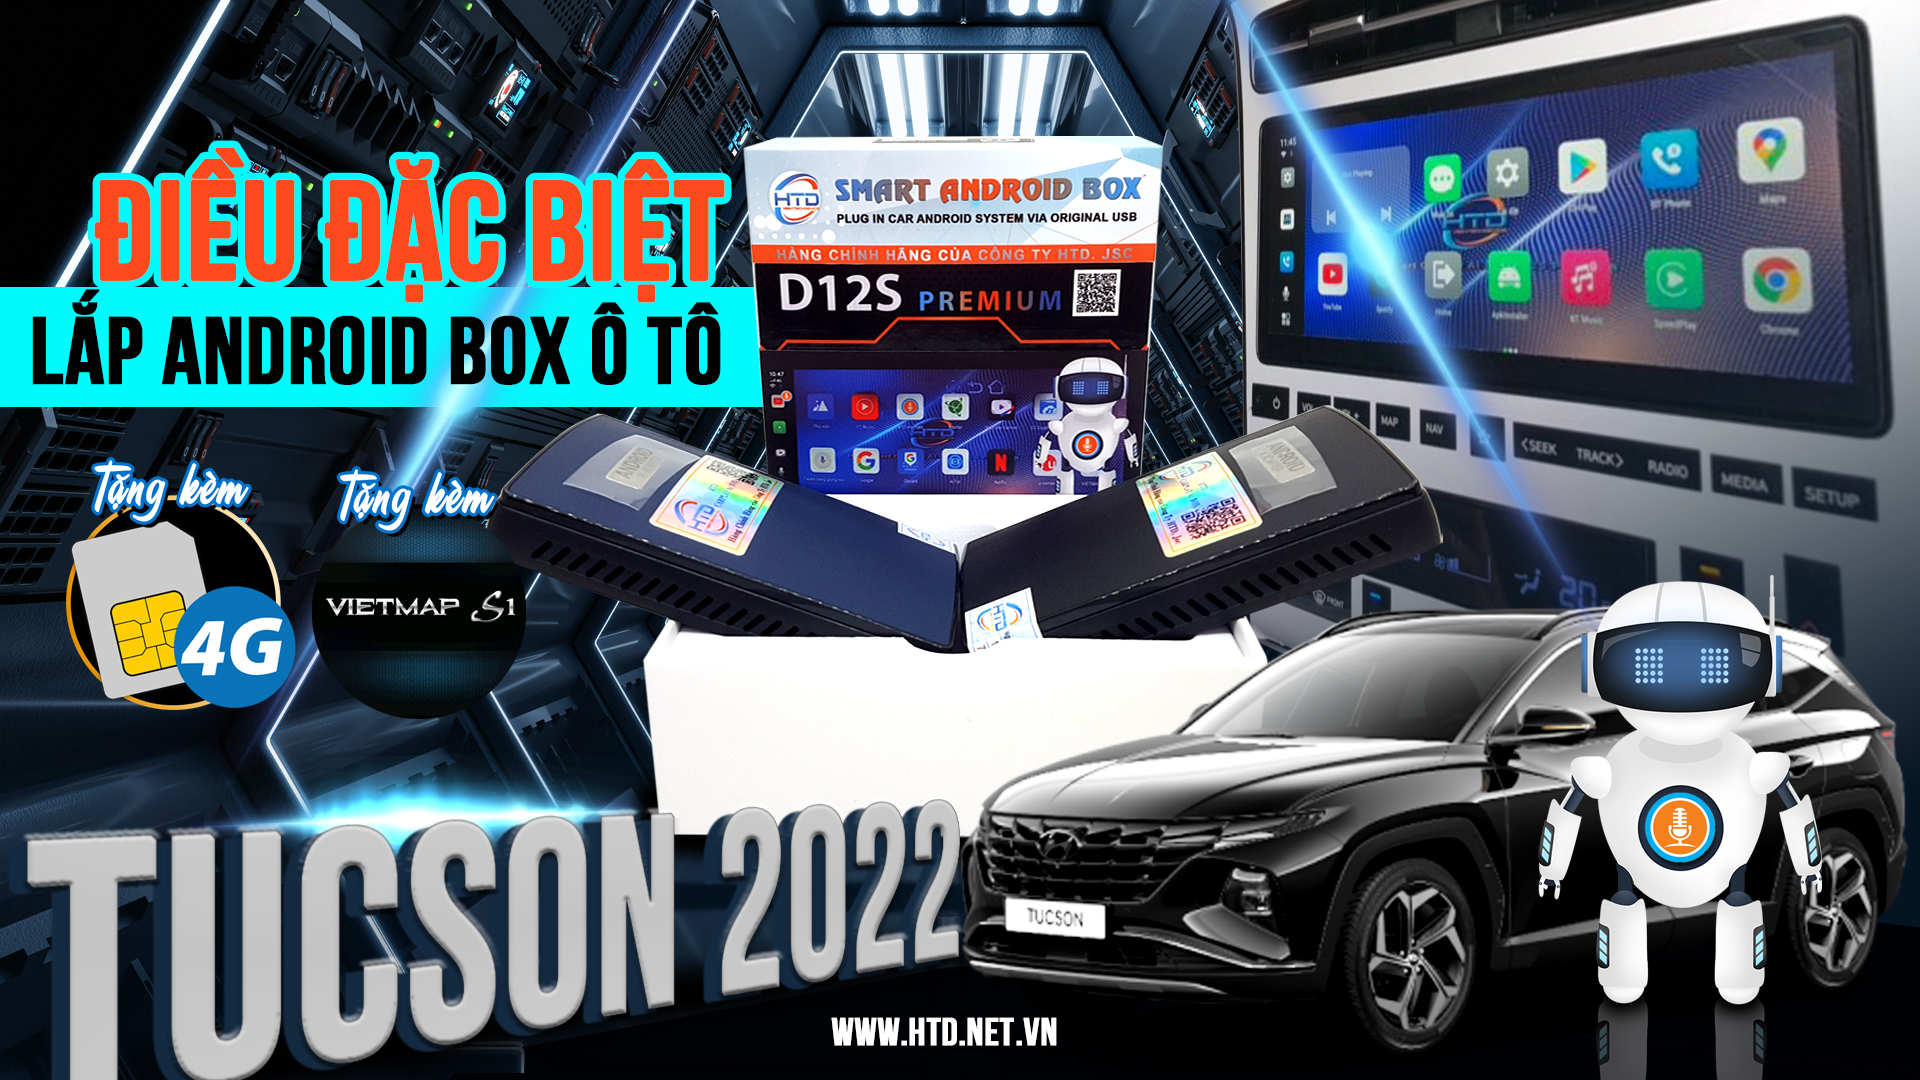 Điều đặc biệt lắp android box cho ô tô Tucson 2018-2022